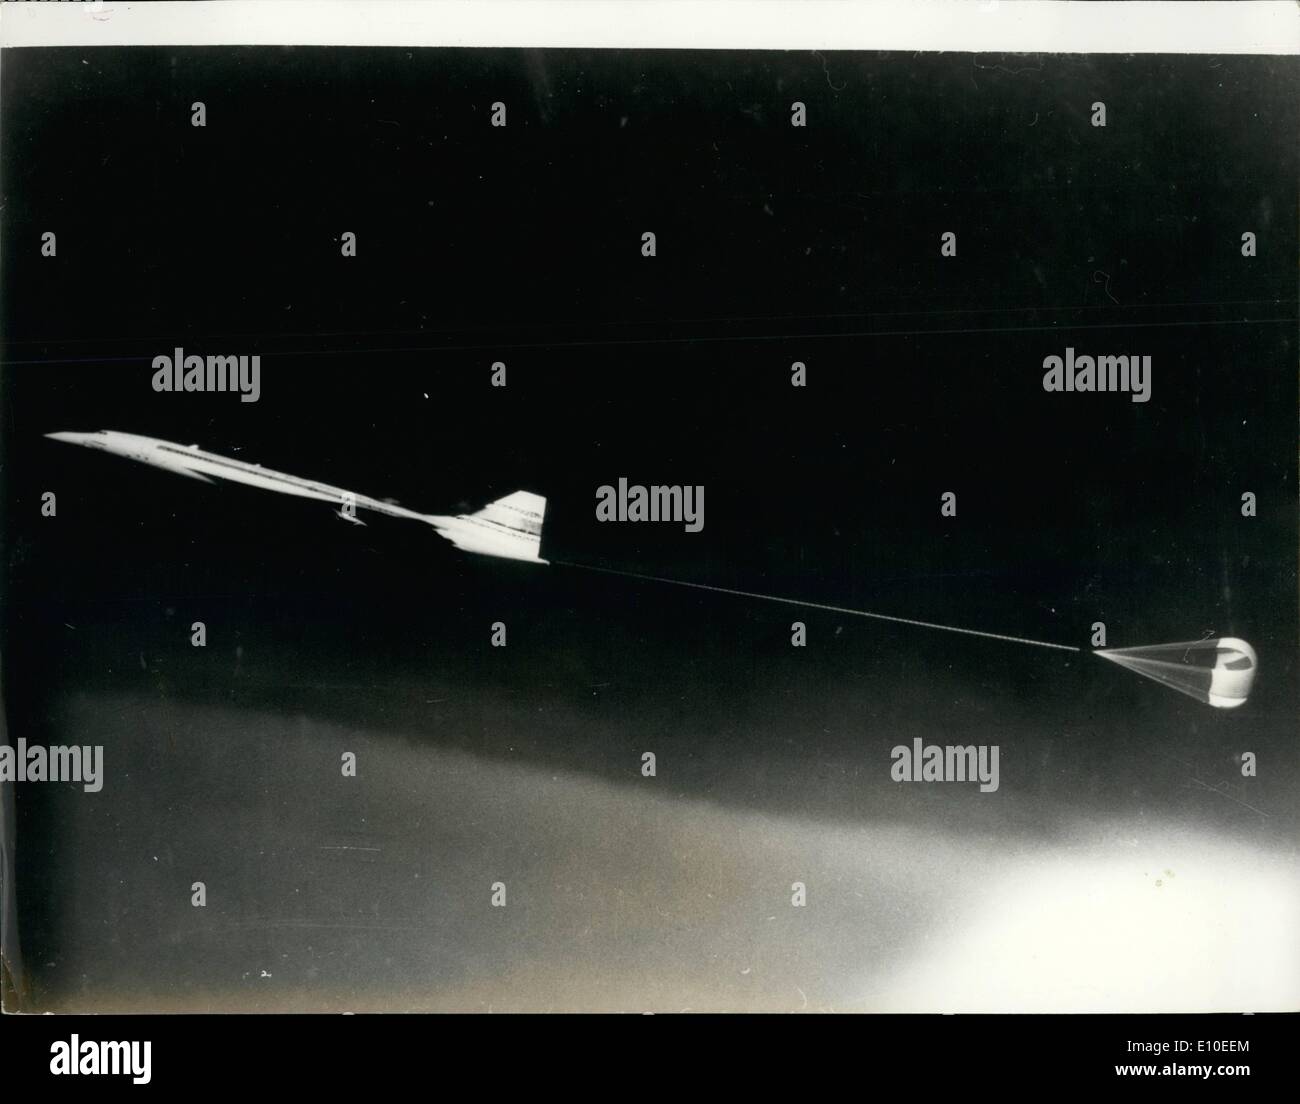 Maggio 05, 1972 - Francese costruito Concorde 001 Parachute test: il francese costruito Concorde 001 test di un paracadute di dispositivo di sicurezza che potrebbe essere usato come un cavalletto da se i controlli sventato mentre il velivolo stava volando con il suo naso in corrispondenza di un angolo esagerato. Il paracadute porta l'aeromobile torna alla normale posizione di volo. Foto Stock